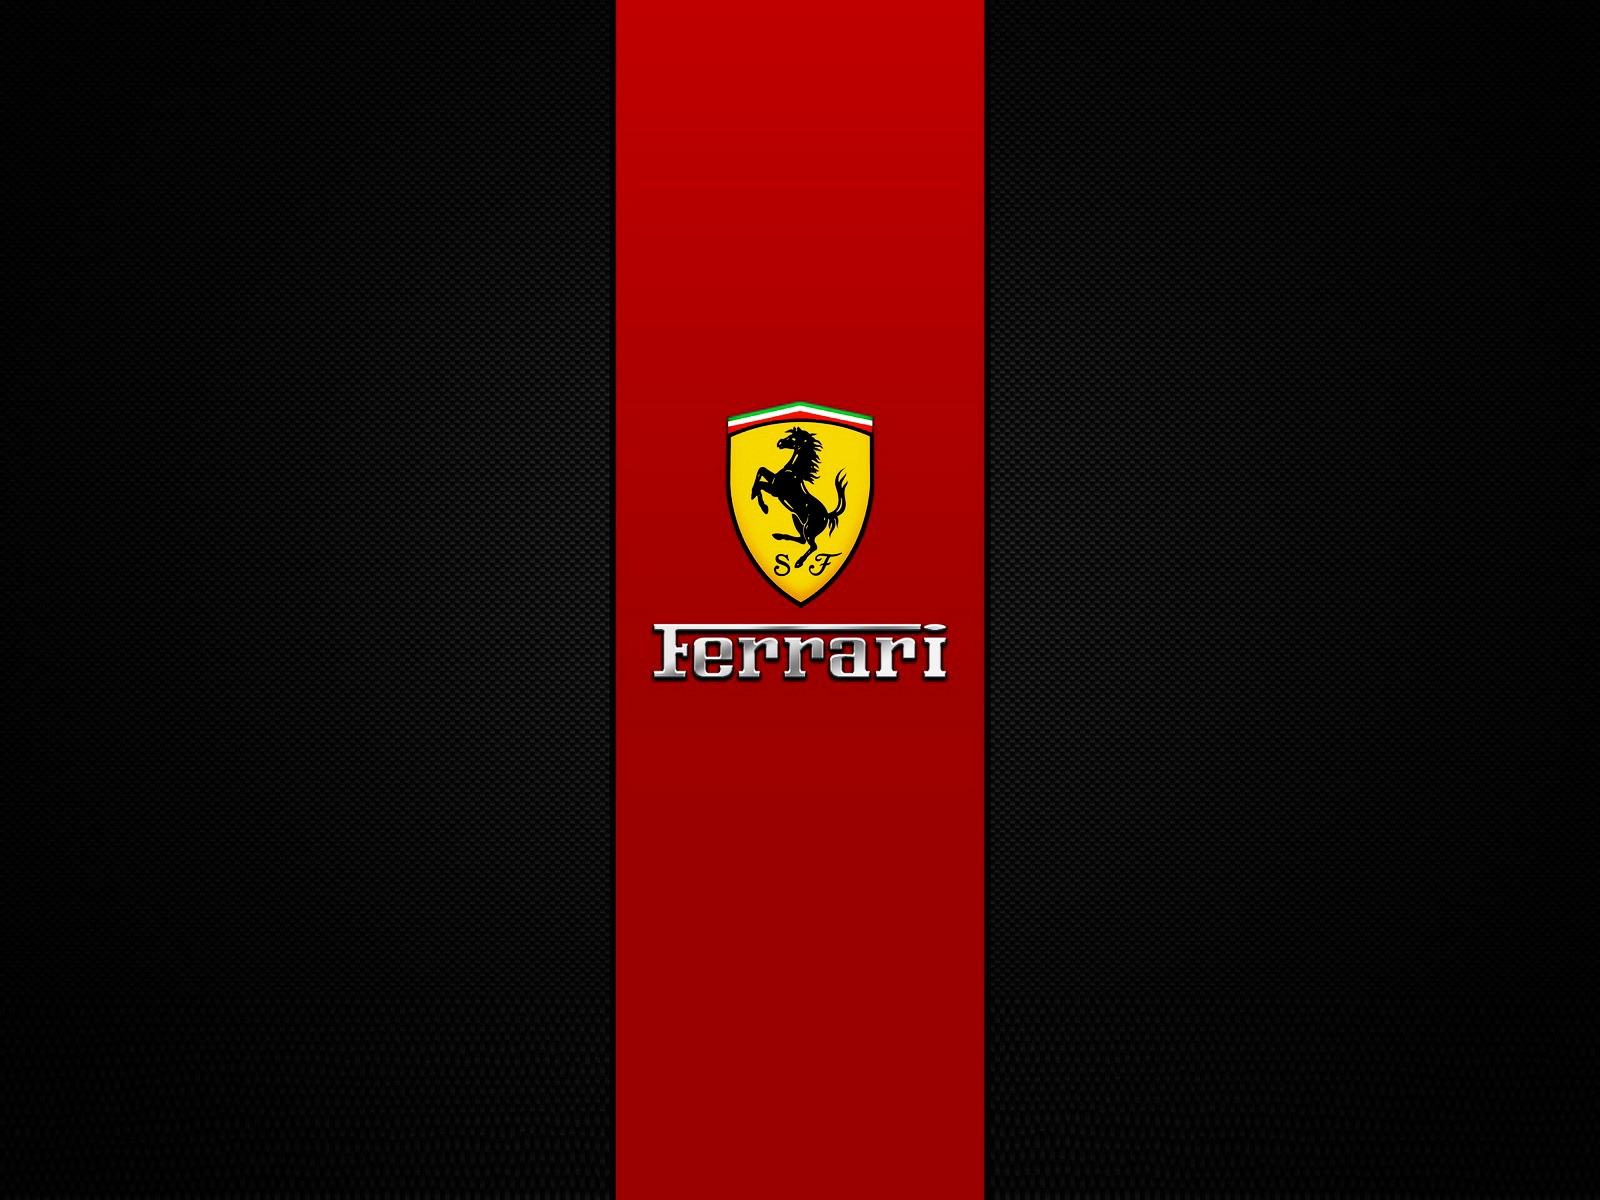 Ferrari Brand Logo for 1600 x 1200 resolution